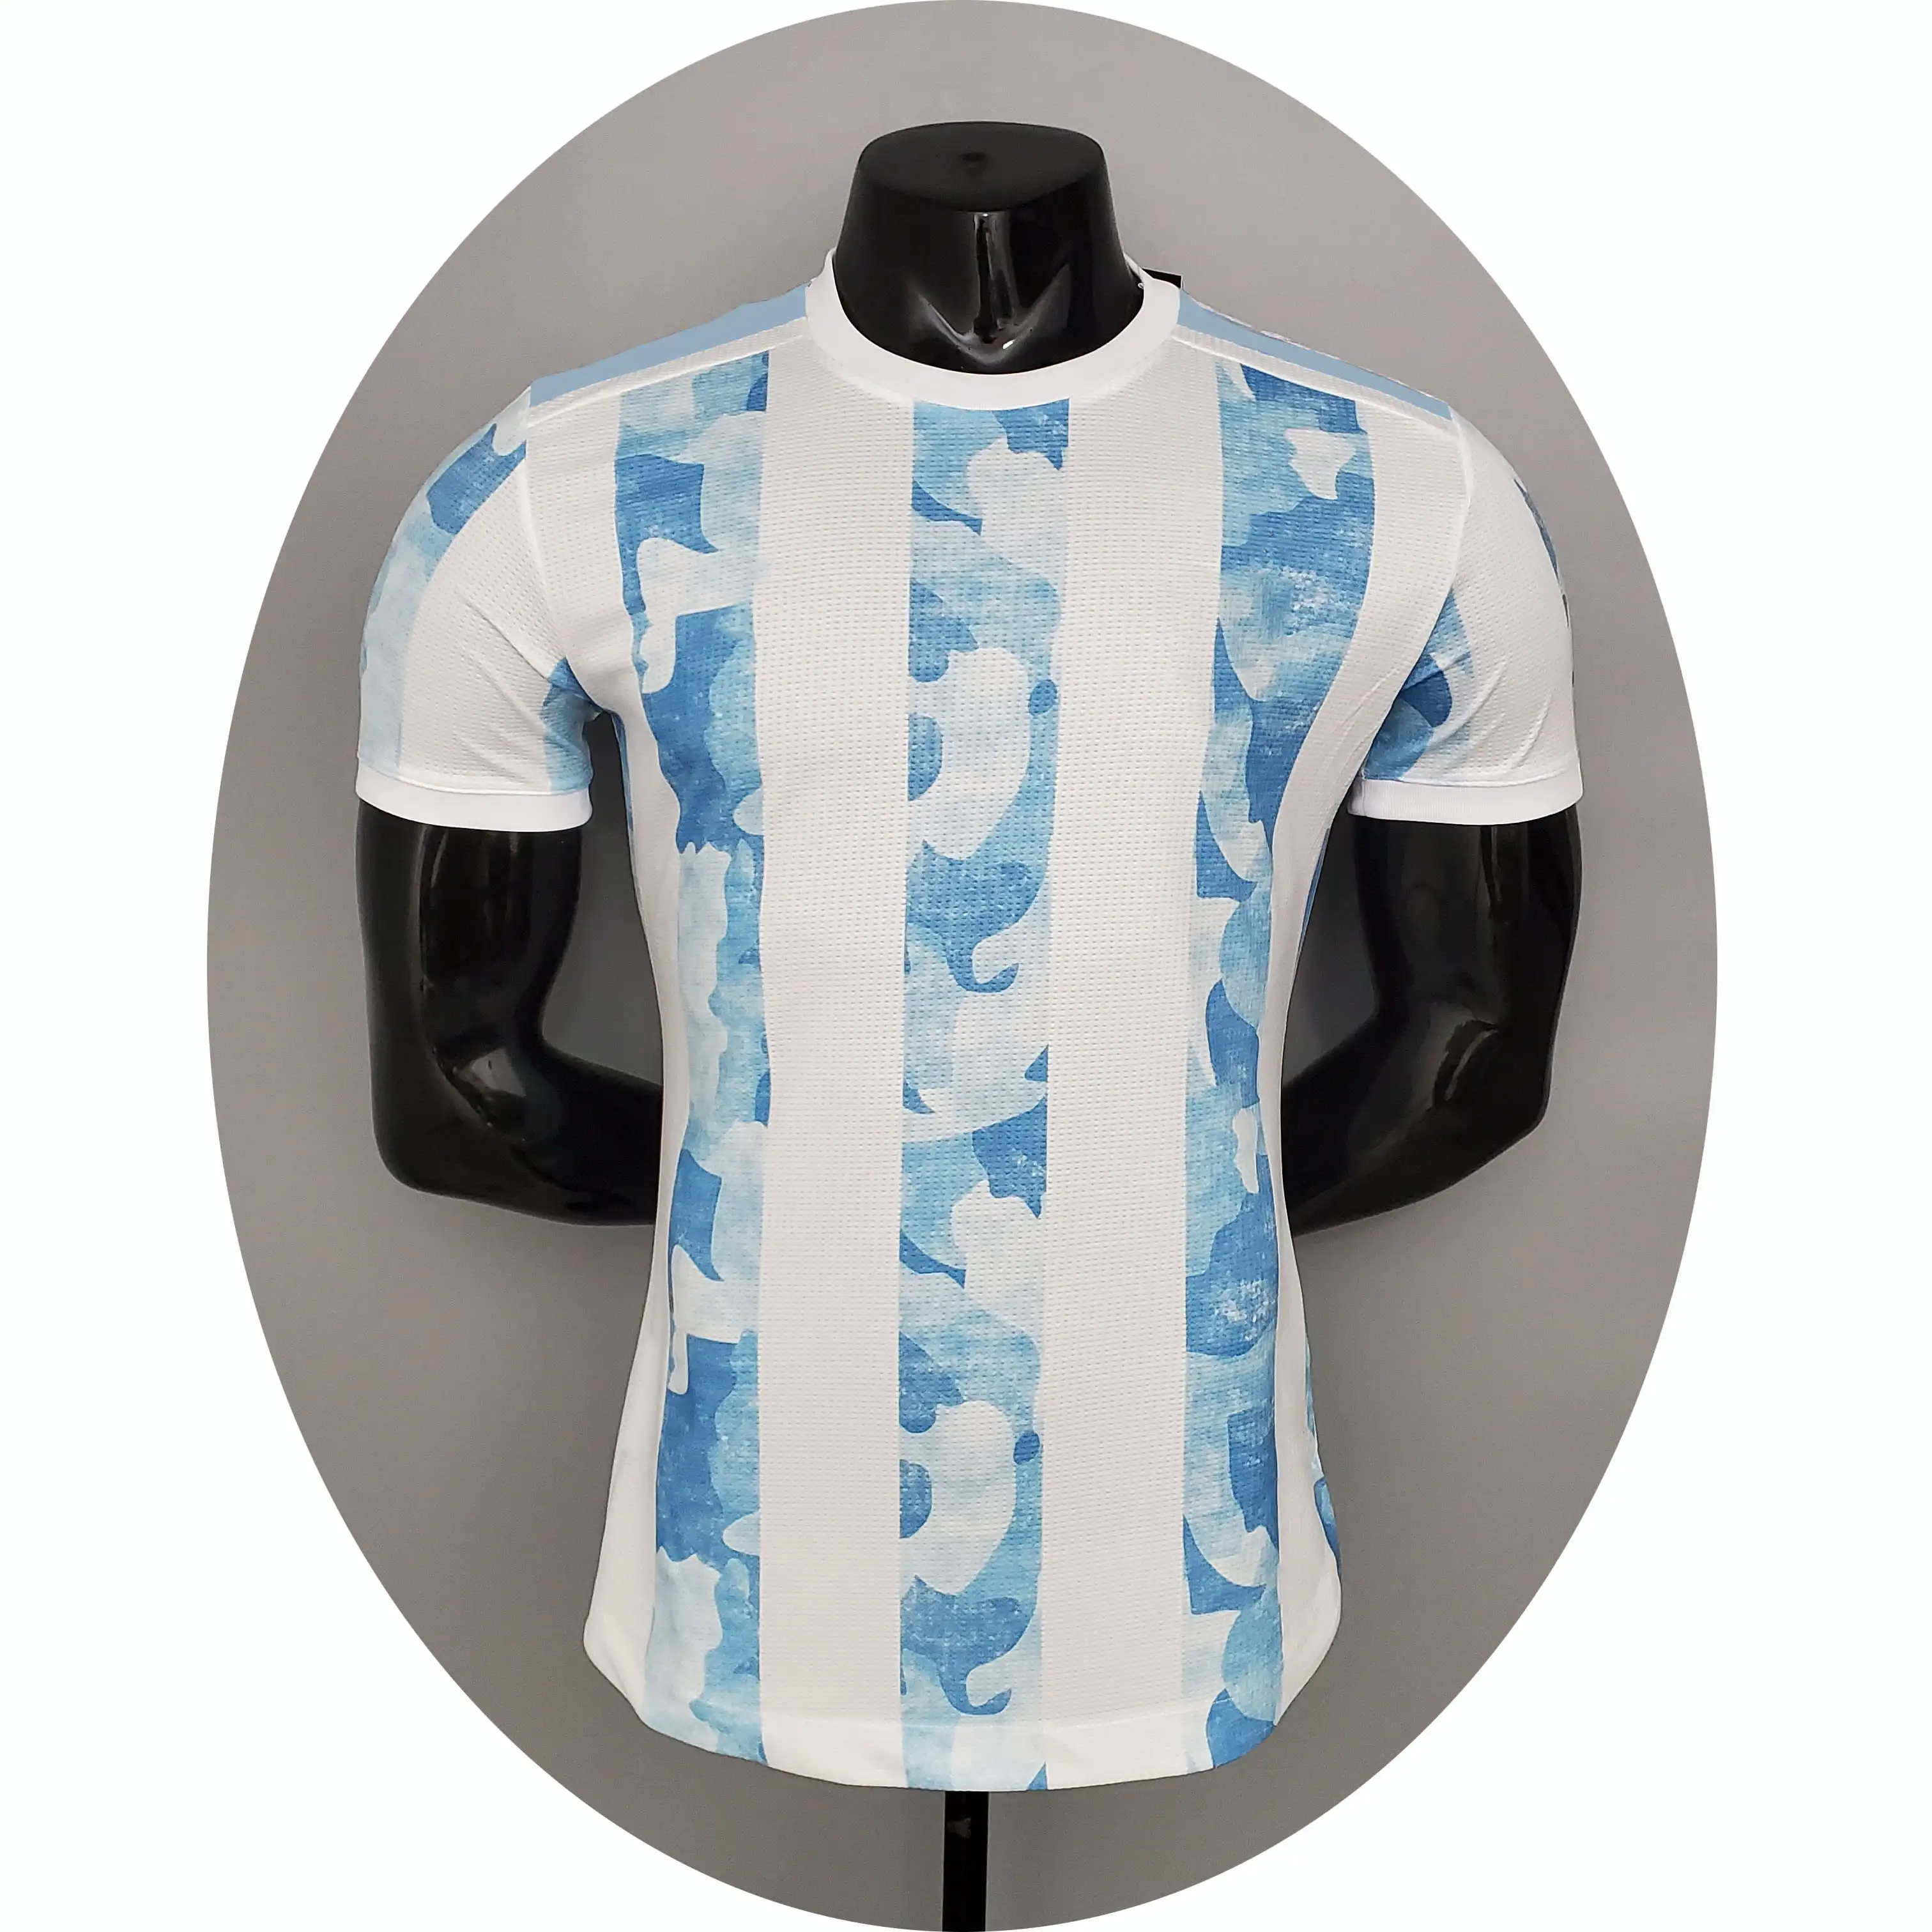 Camiseta de fútbol de Argentina, uniforme de jugador de calidad tailandesa, nuevo modelo 21/22